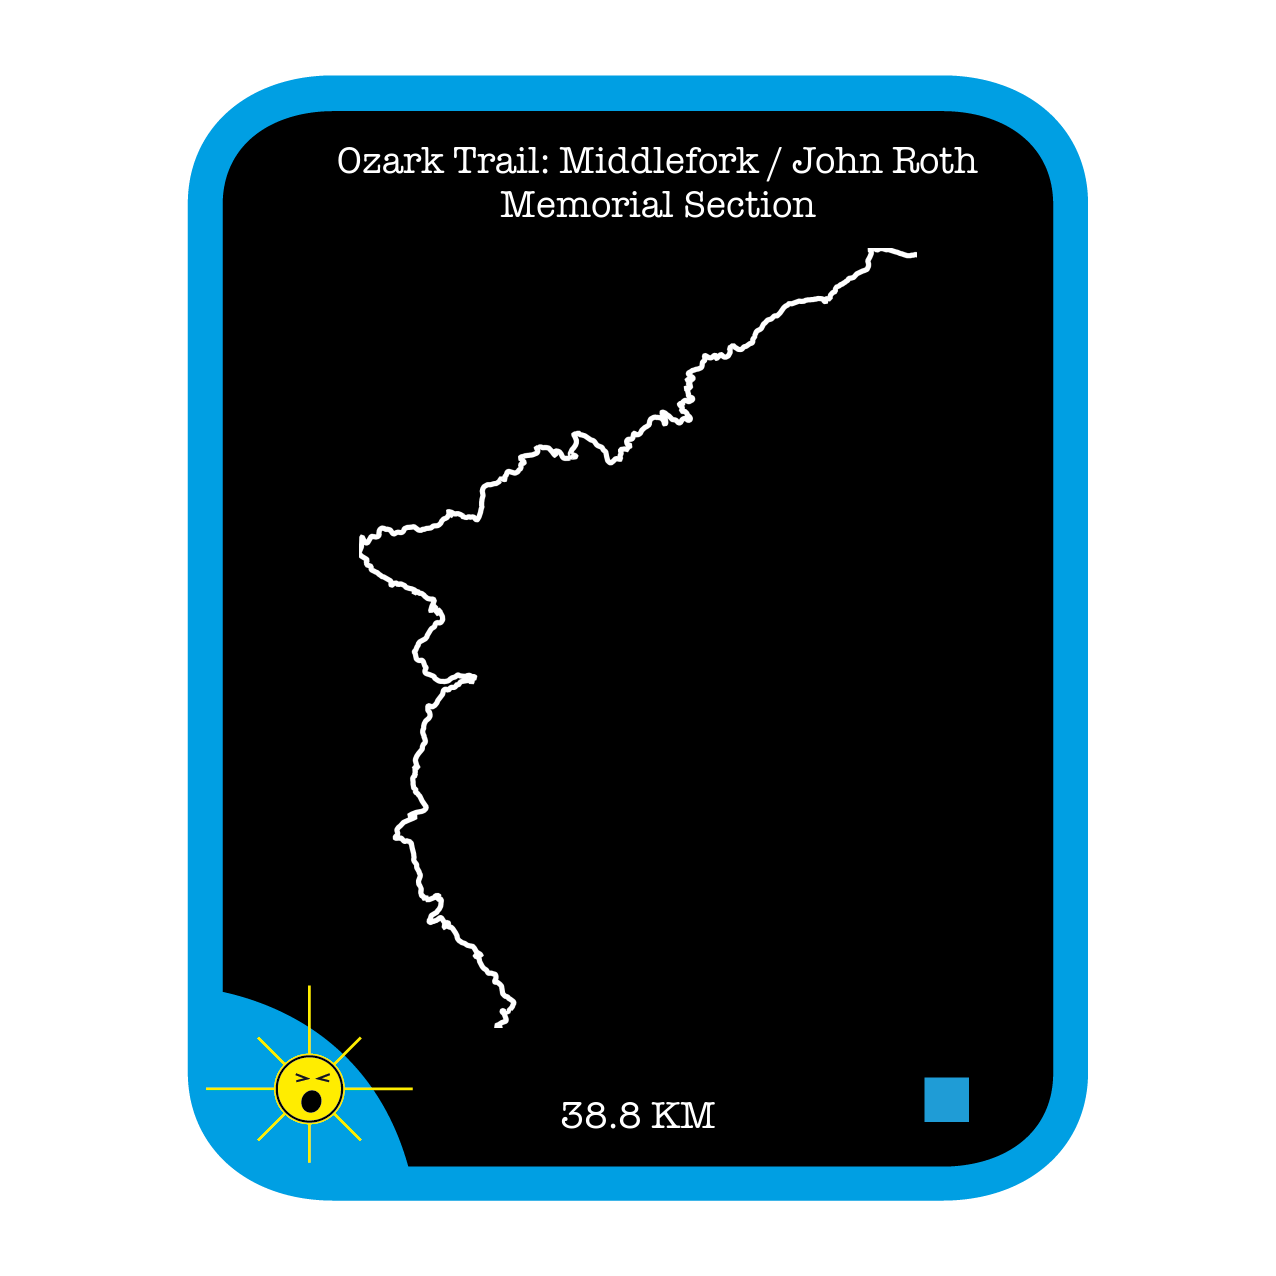 Ozark Trail: Middlefork / John Roth Memorial Section